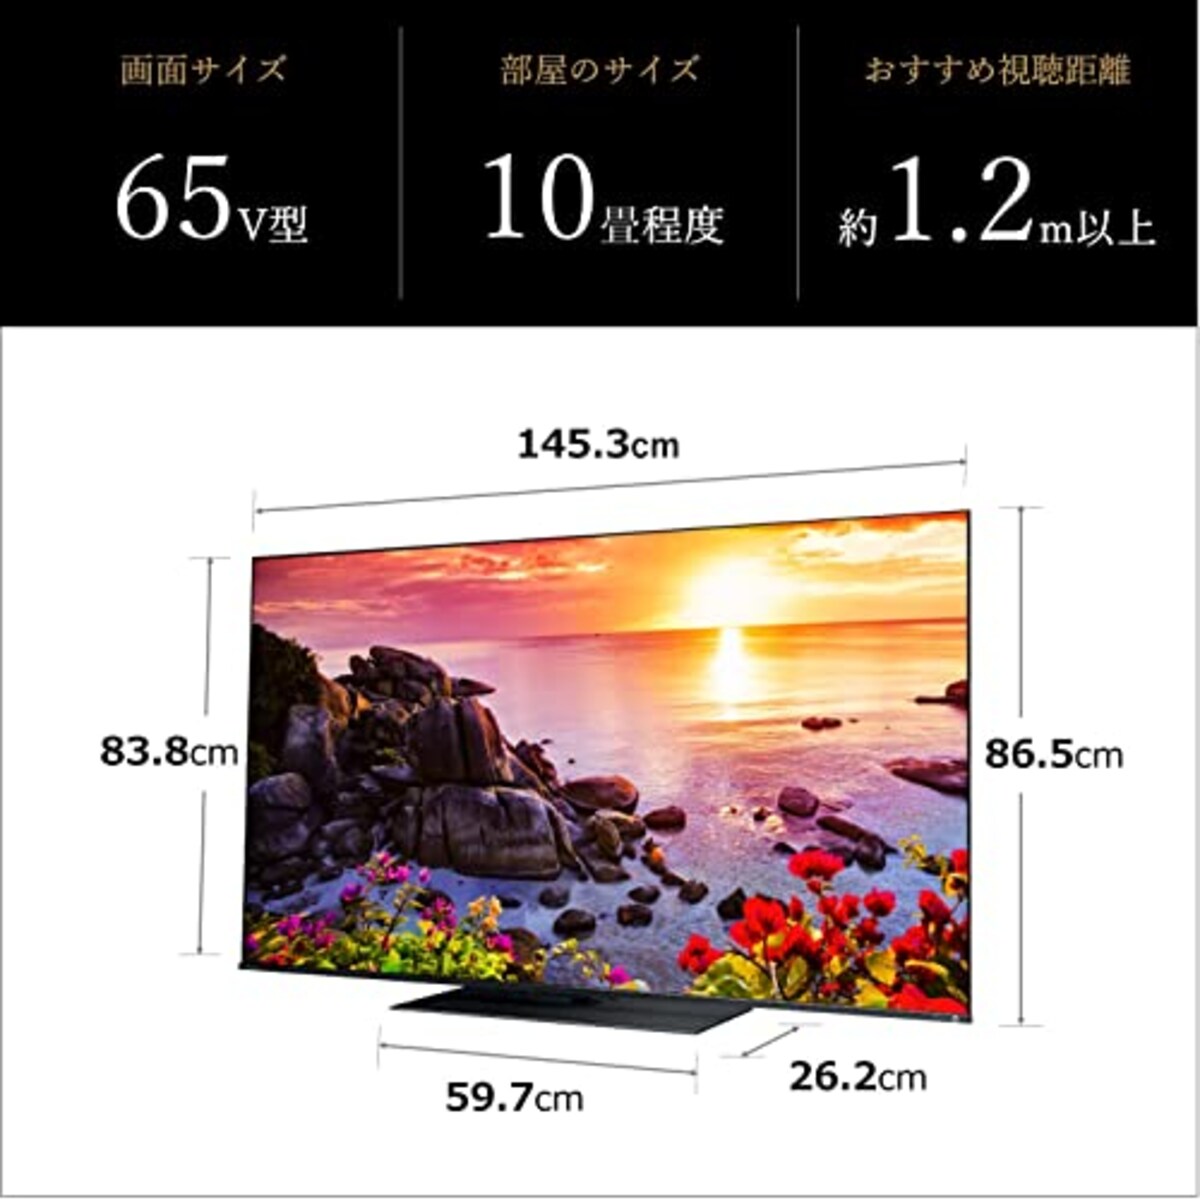  REGZA 65インチ 4K液晶テレビ 65Z770L 4Kチューナー内蔵 外付けHDD 裏番組録画 スマートテレビ (2022年モデル)画像4 